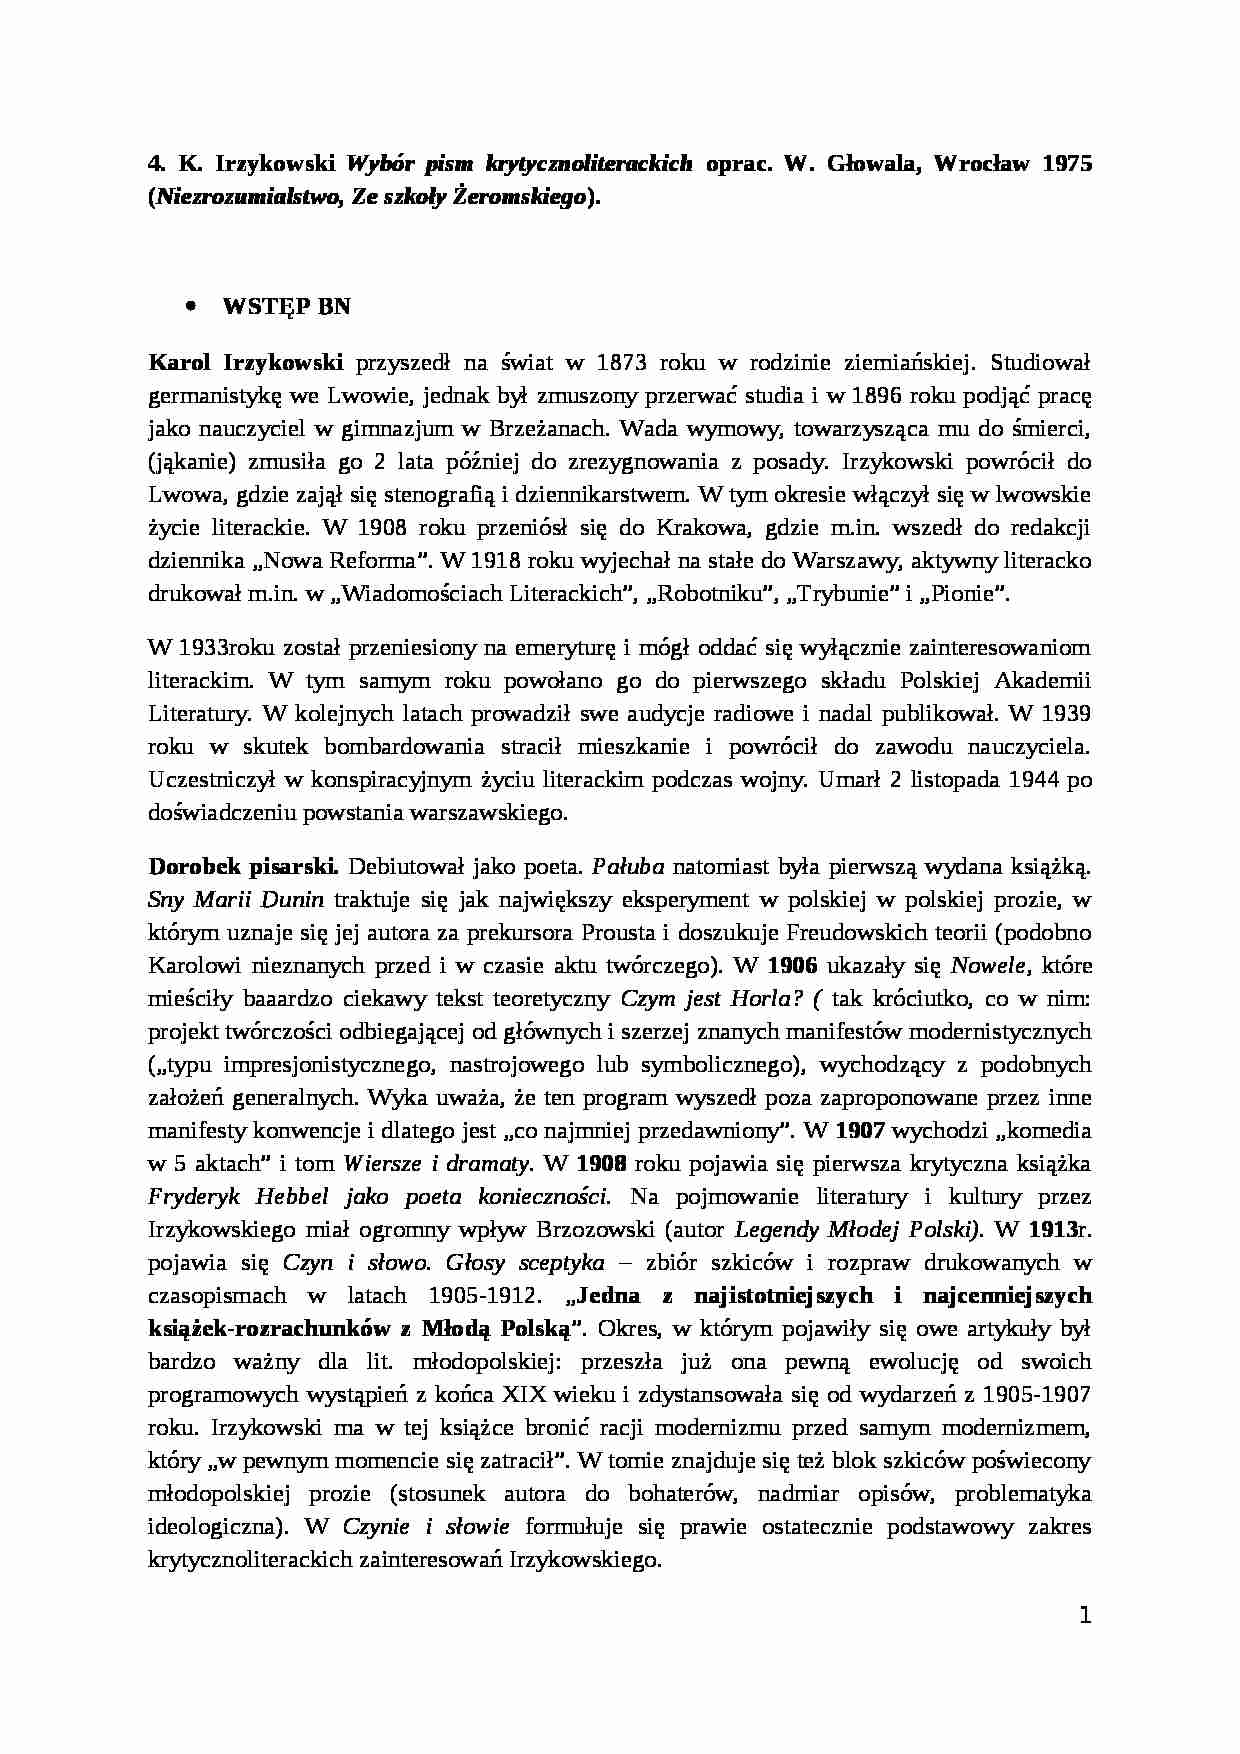 K. Irzykowski - Wybór pism krytycznoliterackich - strona 1